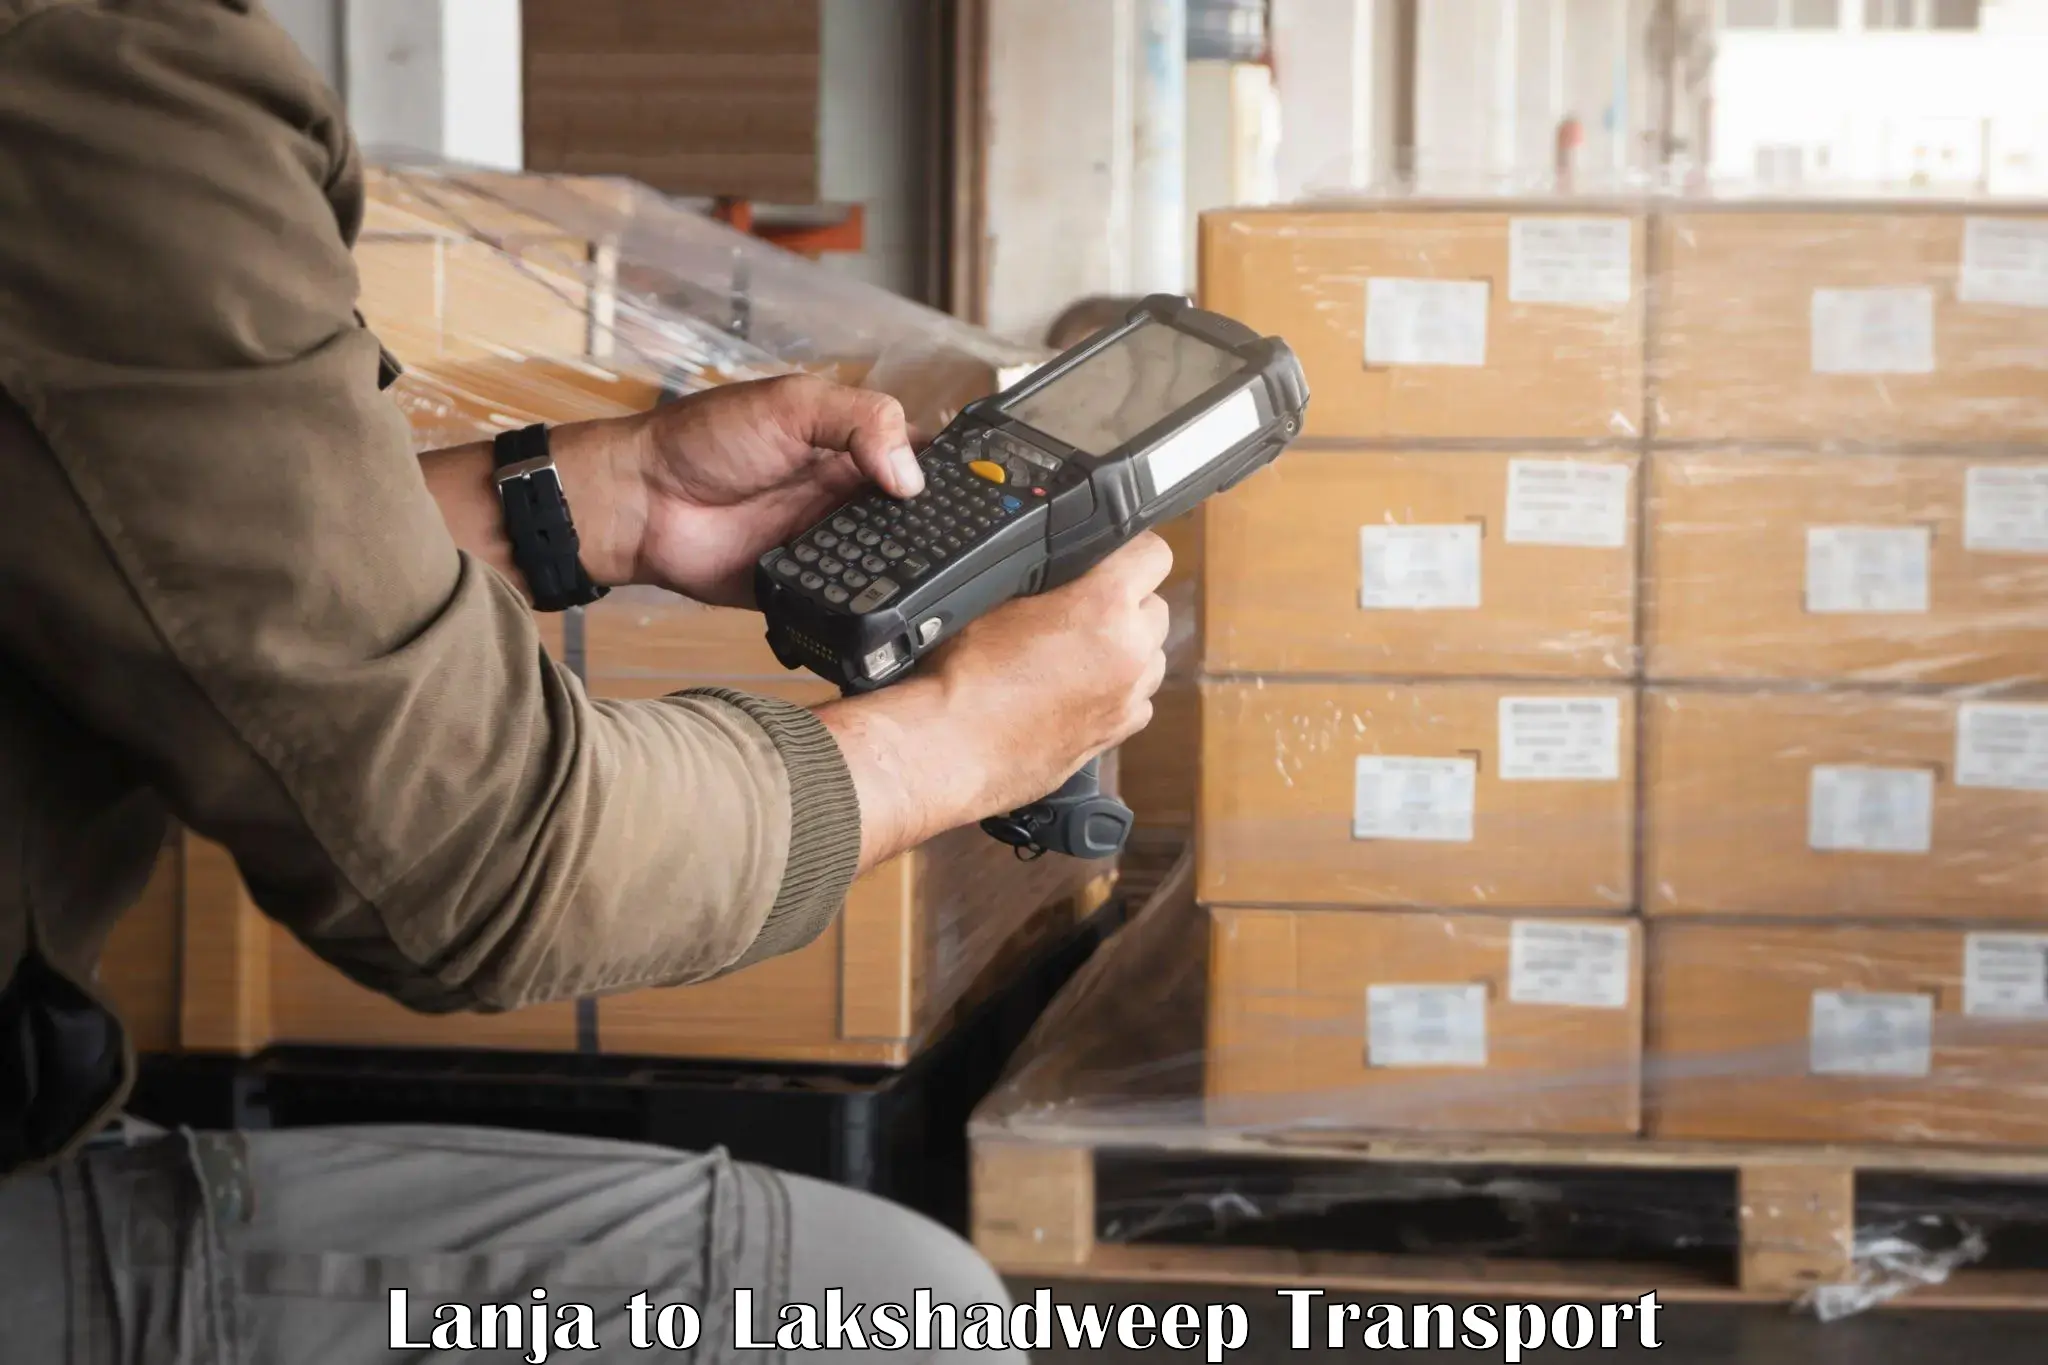 Land transport services Lanja to Lakshadweep